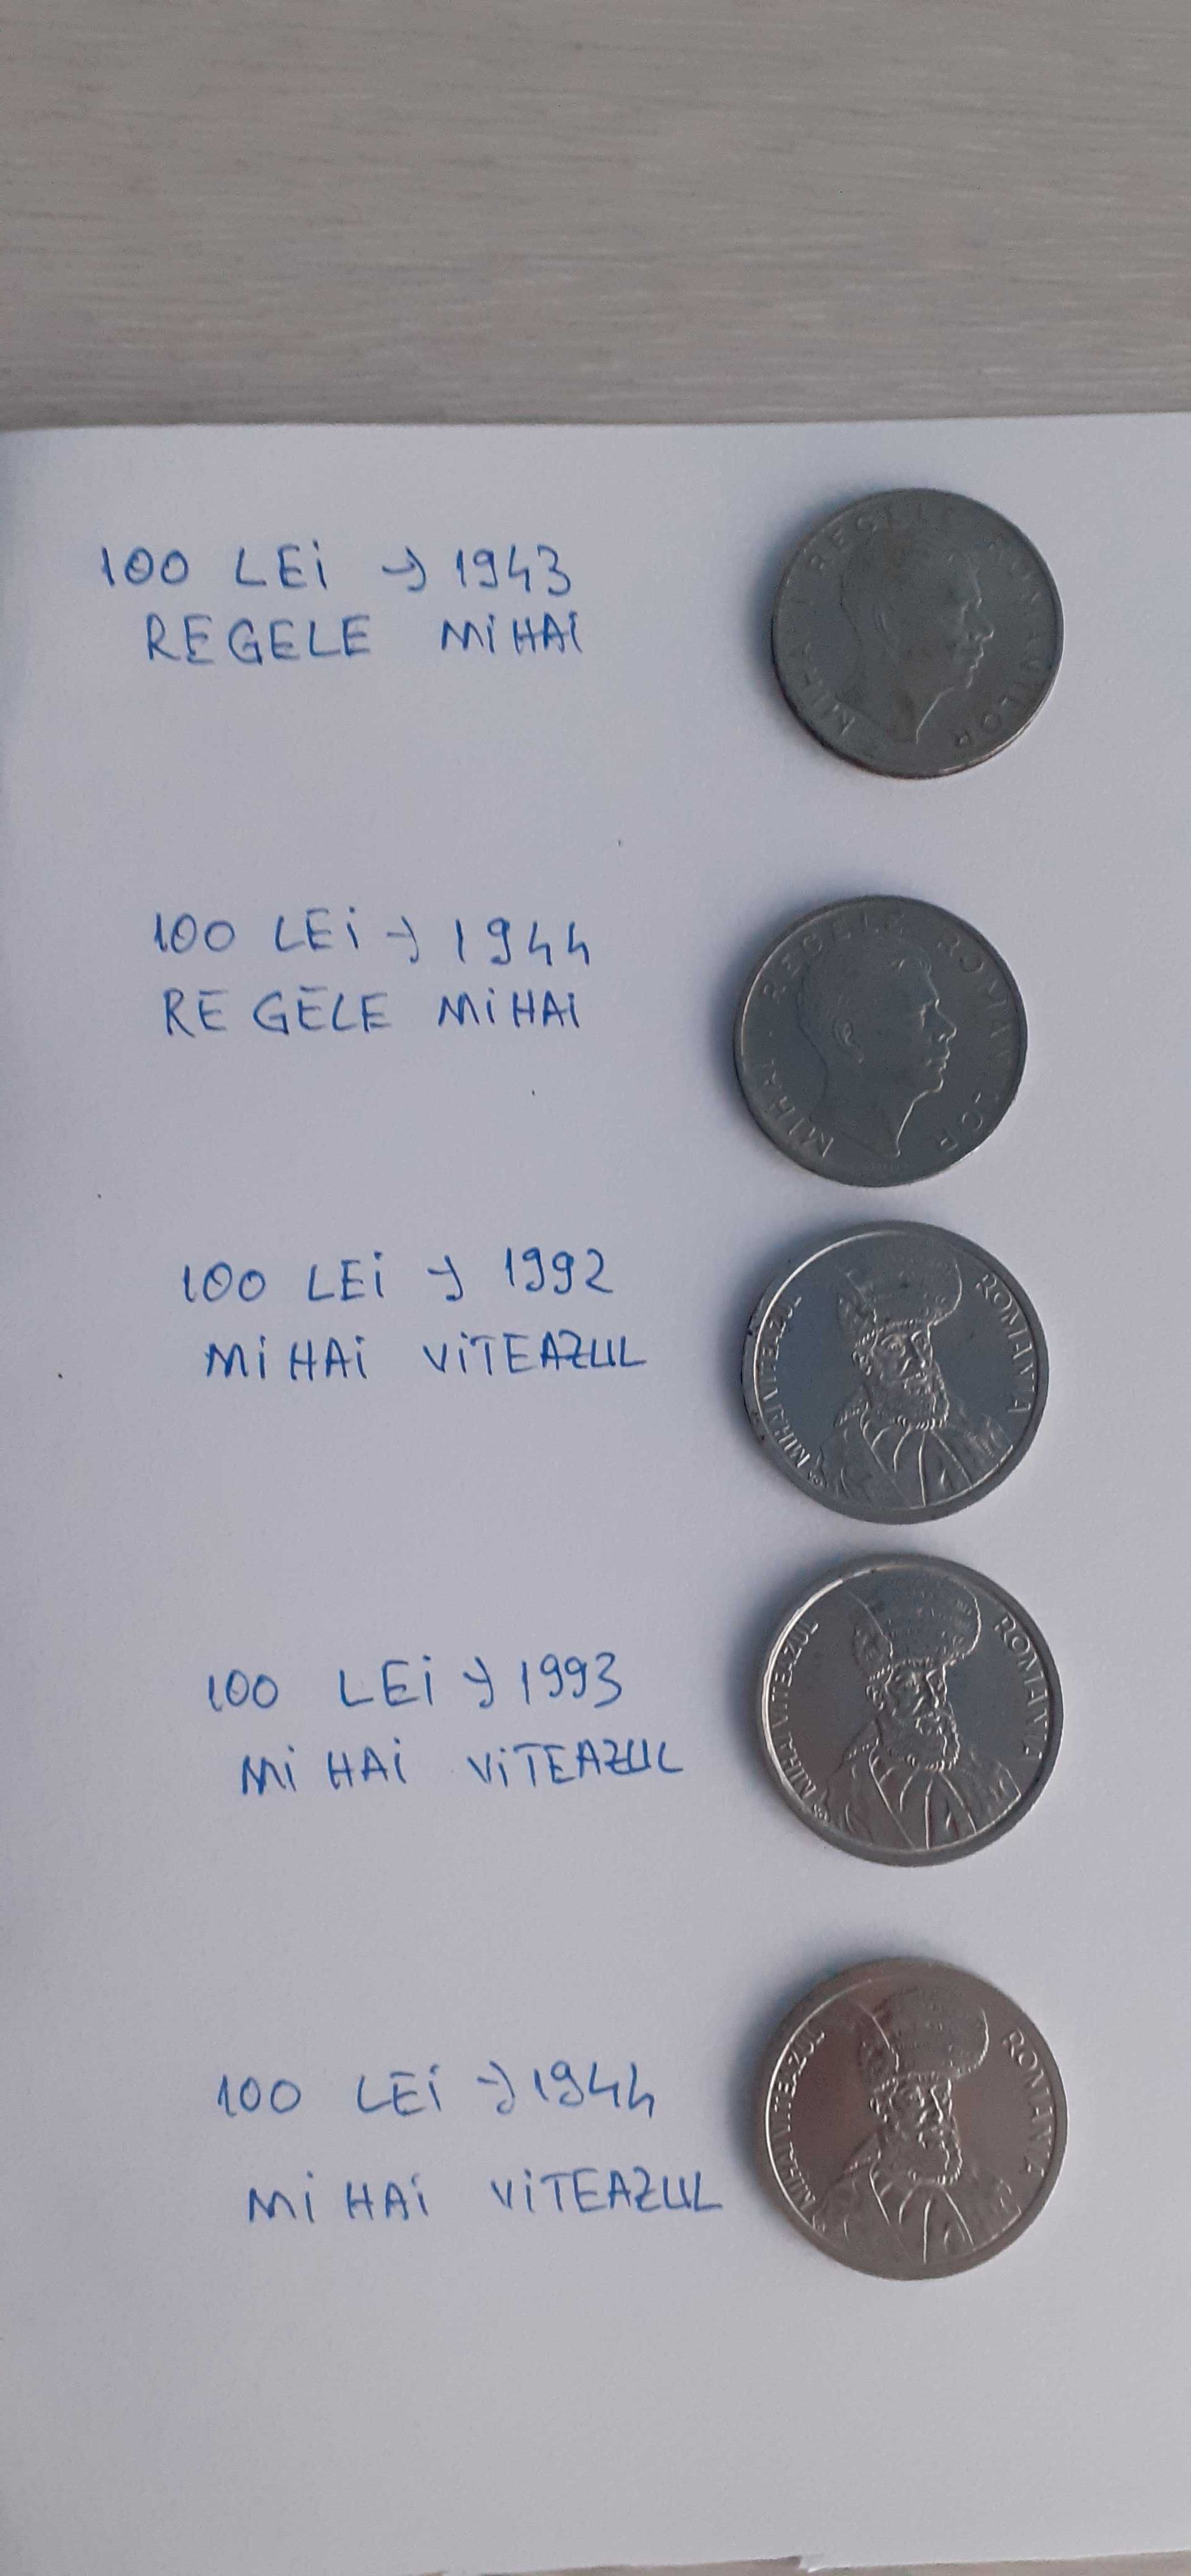 Monede romanesti 100 lei anii 1943-1994,cu Regele Mihai, pret 1000 lei